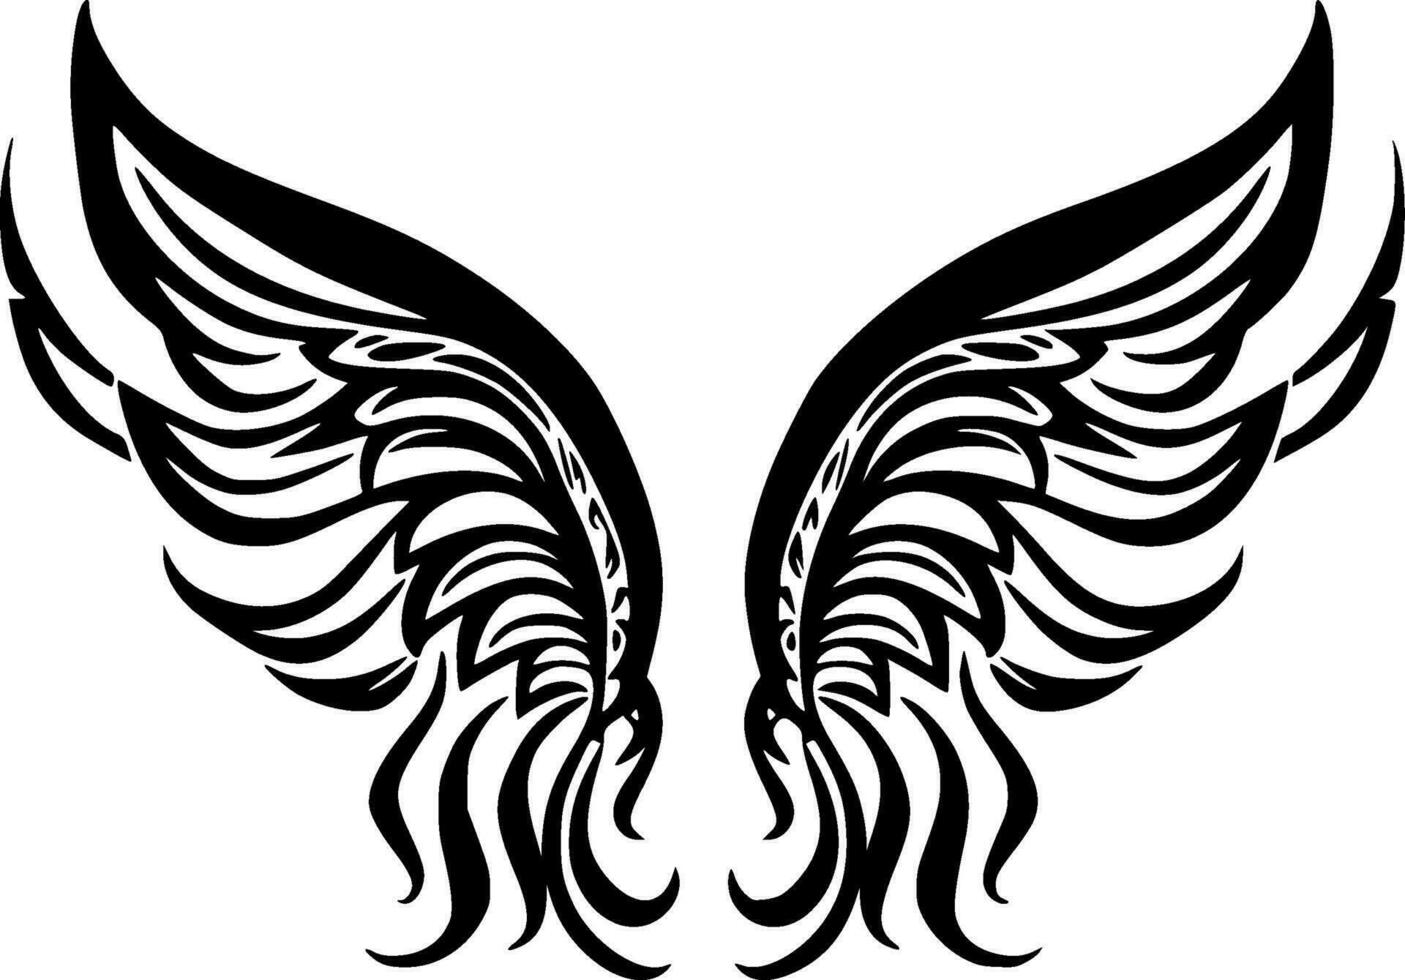 Flügel - - minimalistisch und eben Logo - - Vektor Illustration